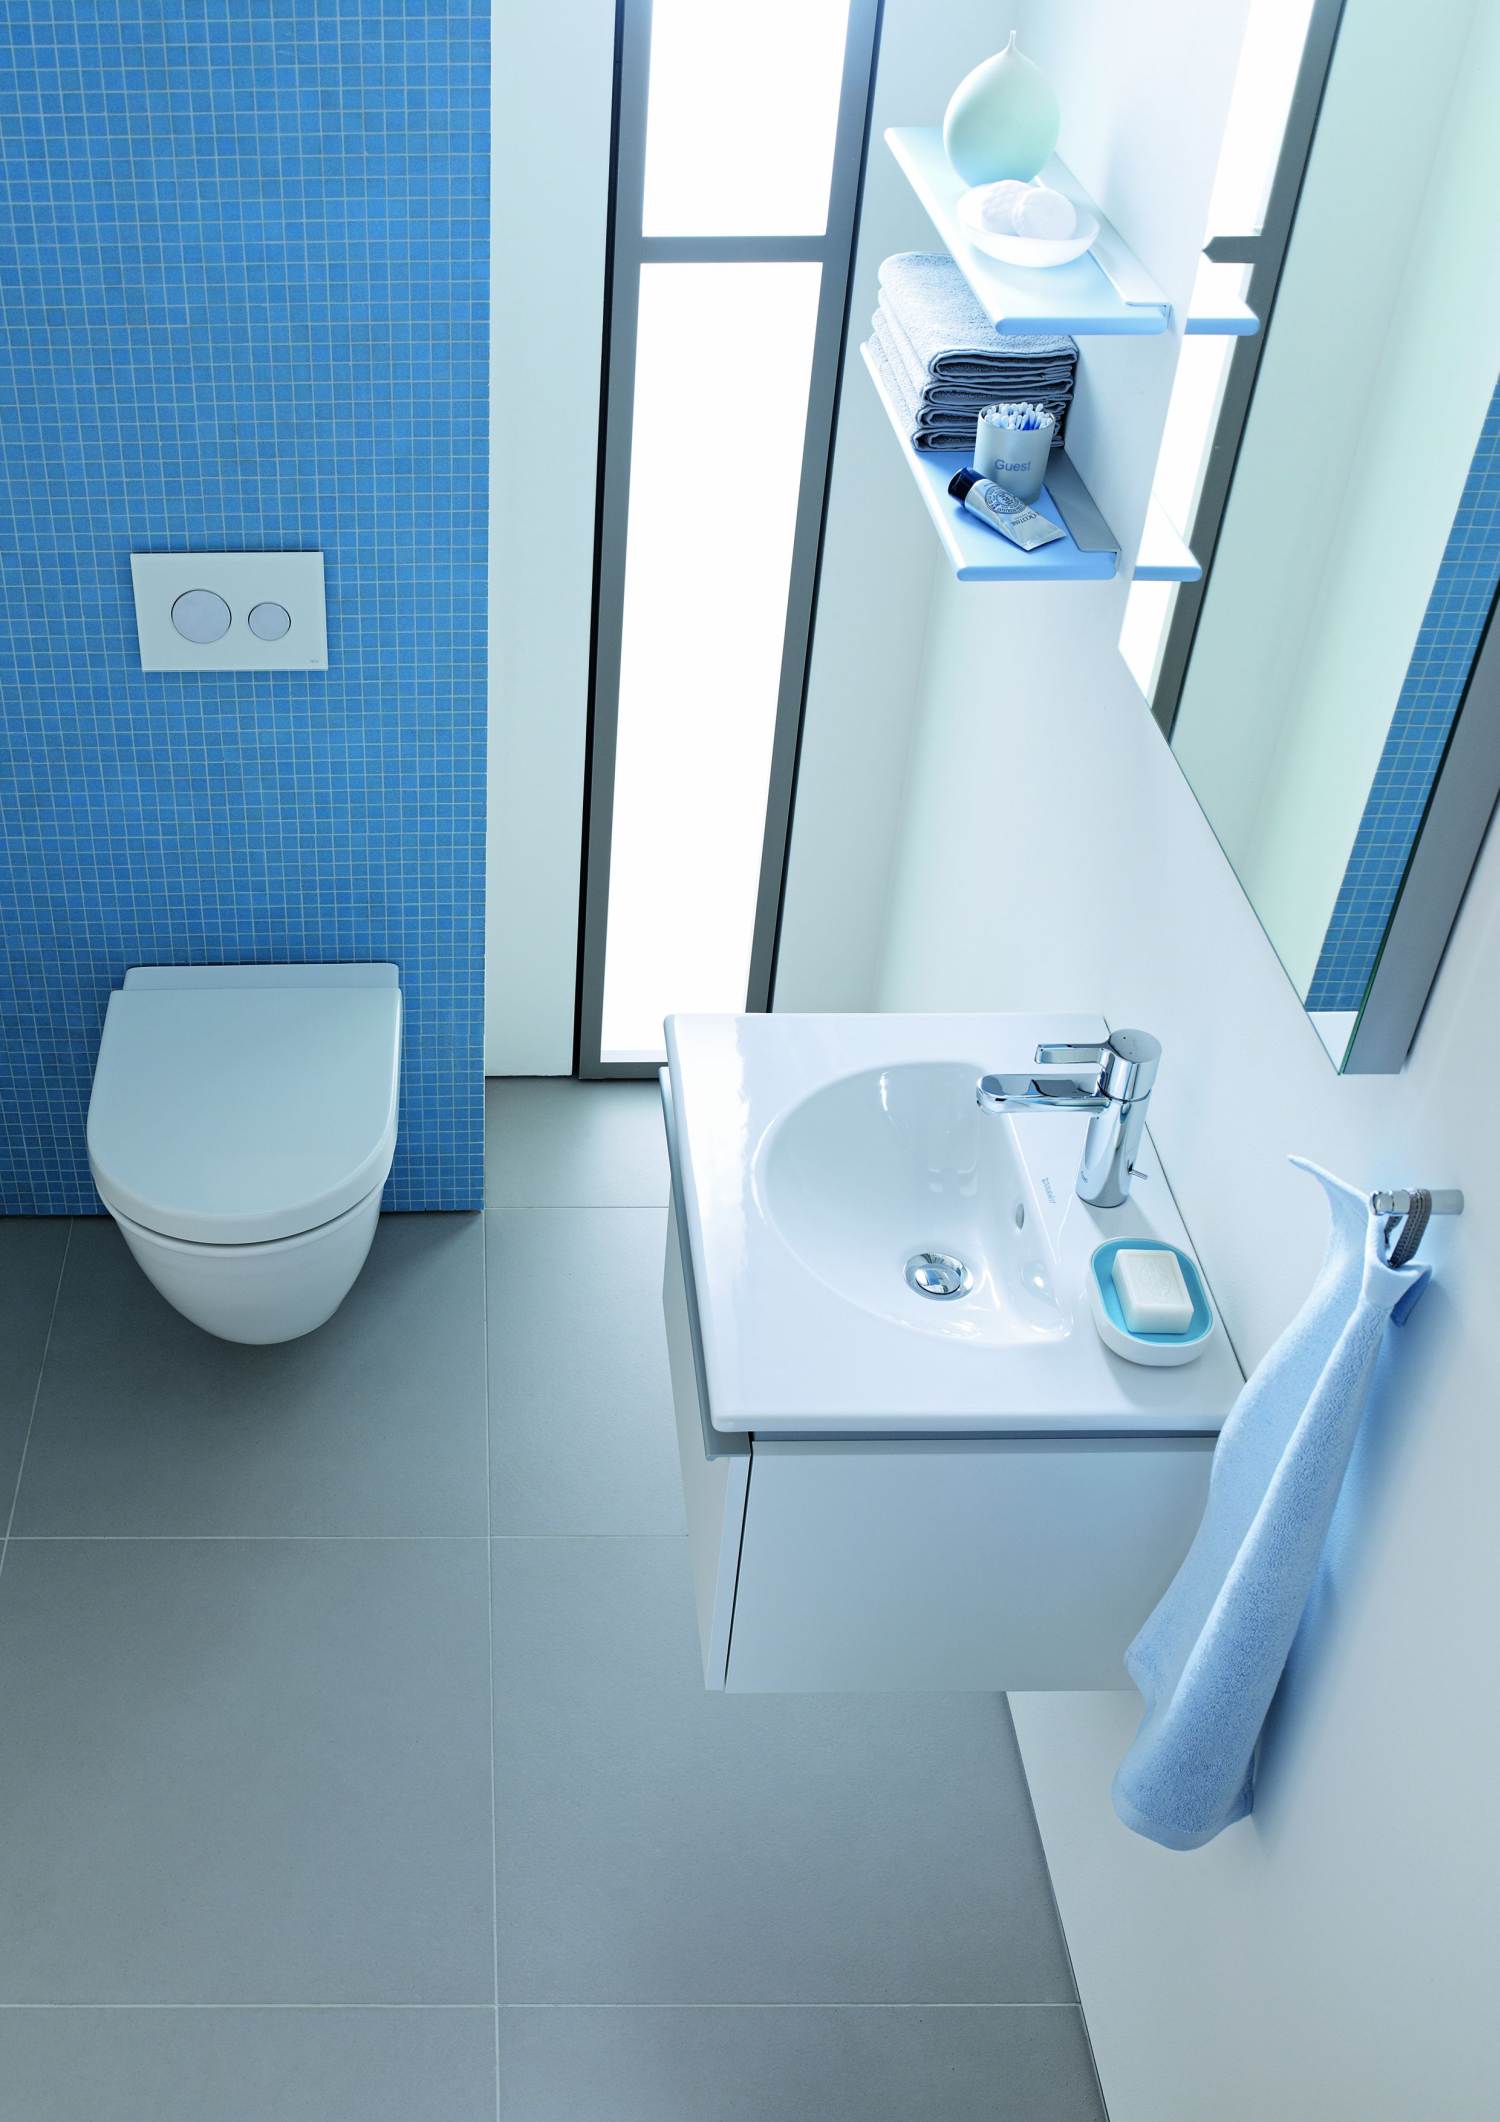 niebieska mozaika w łazience, łazienka z błękitną mozaiką, błękitna mozaika łazienkowa